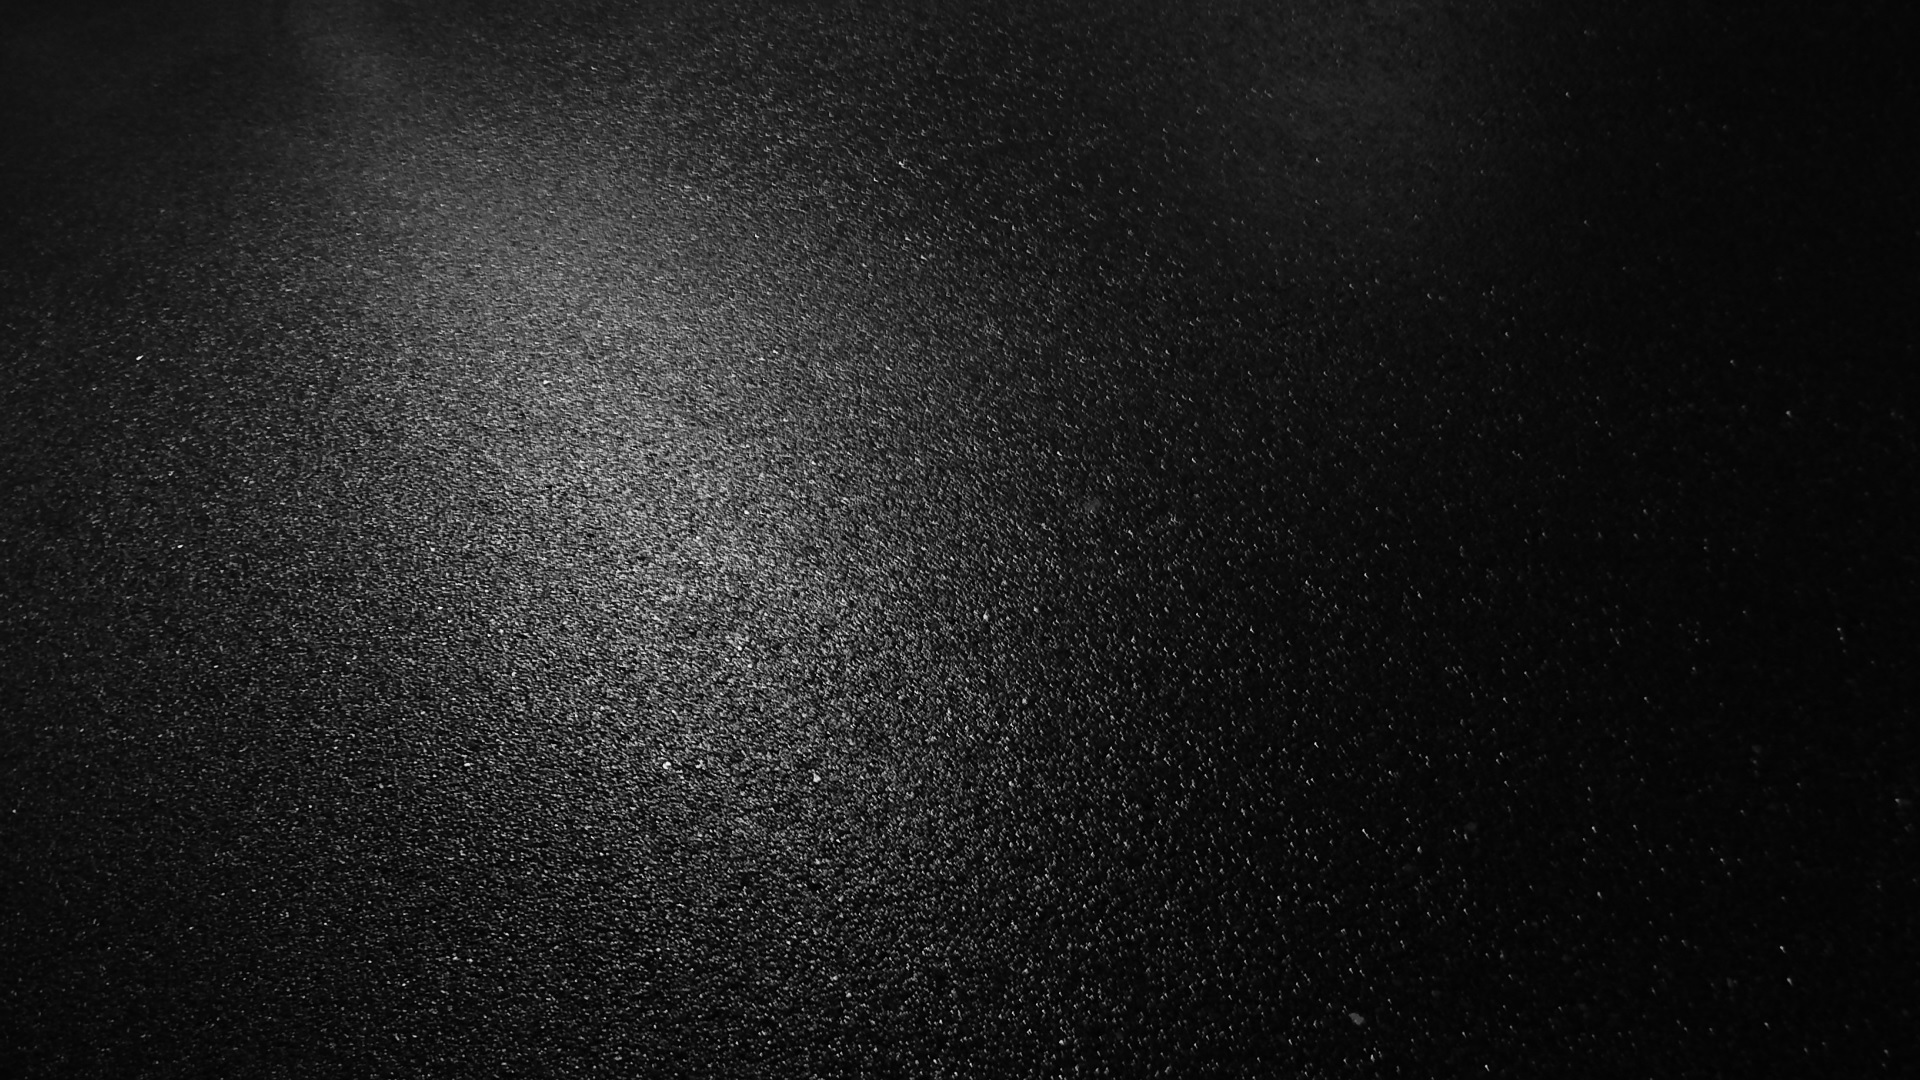 carta da parati negro,nero,buio,cielo,bianco e nero,fotografia